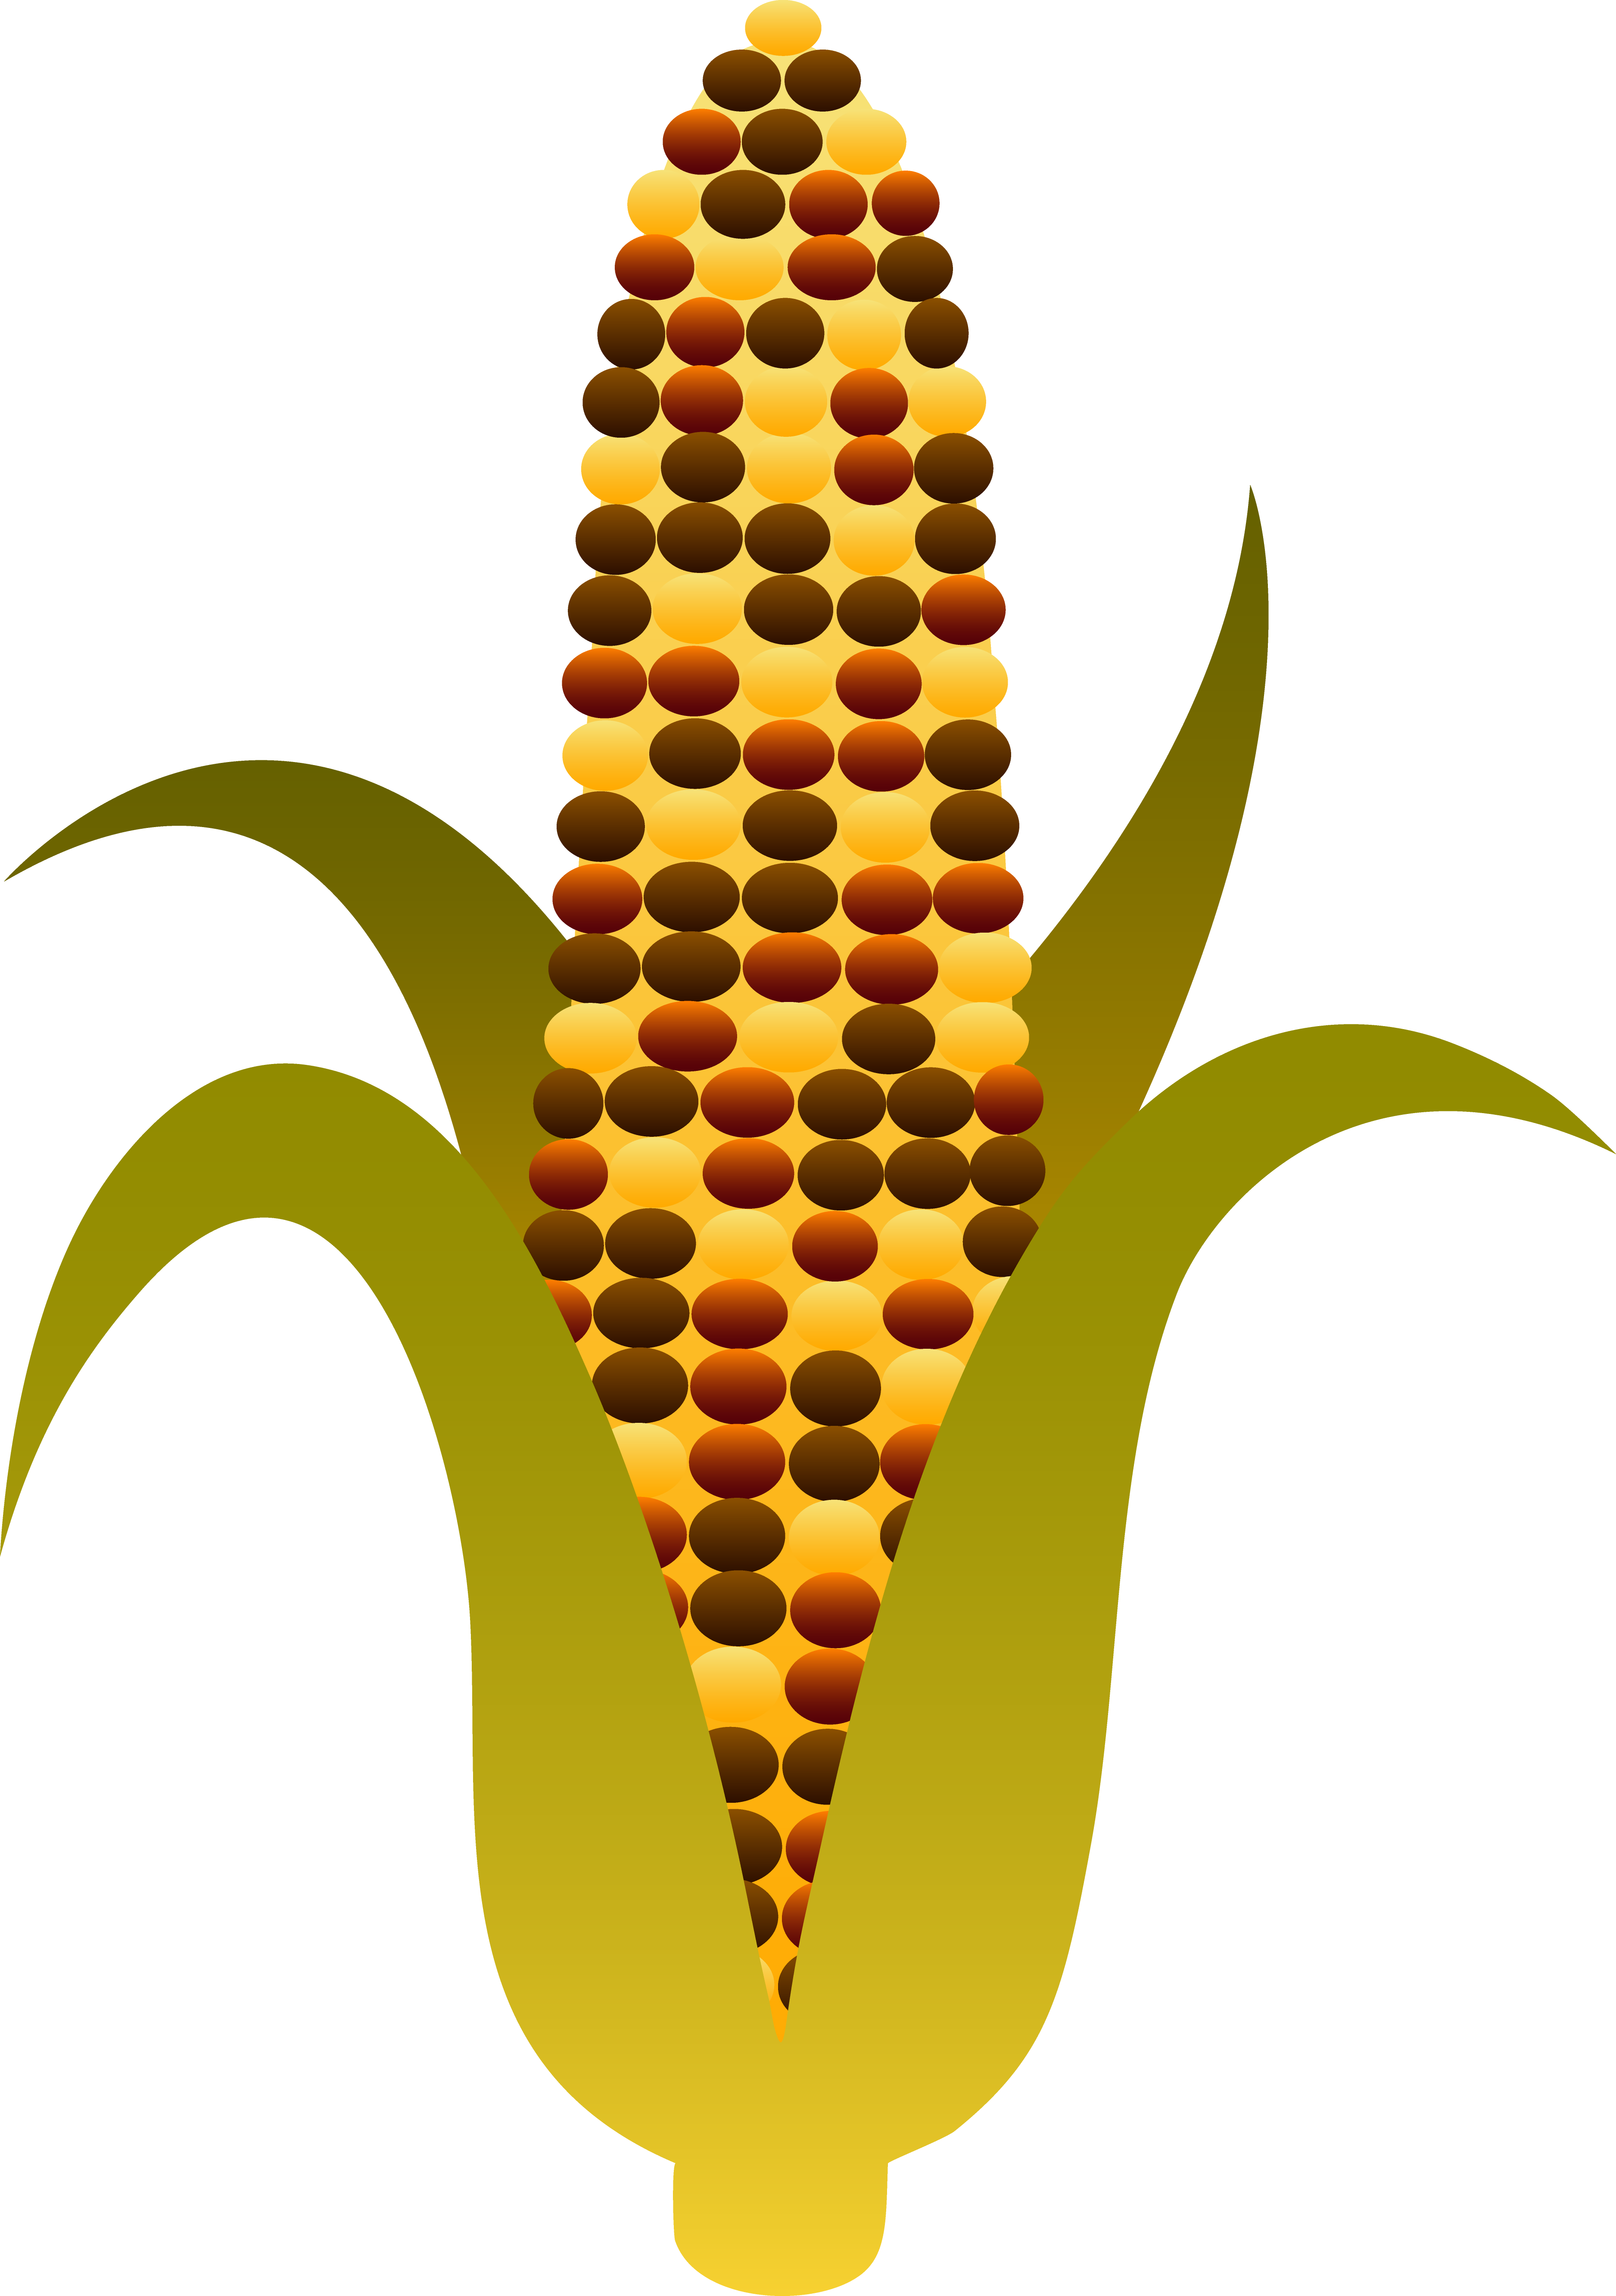 Corn on the cob clipart - Cli